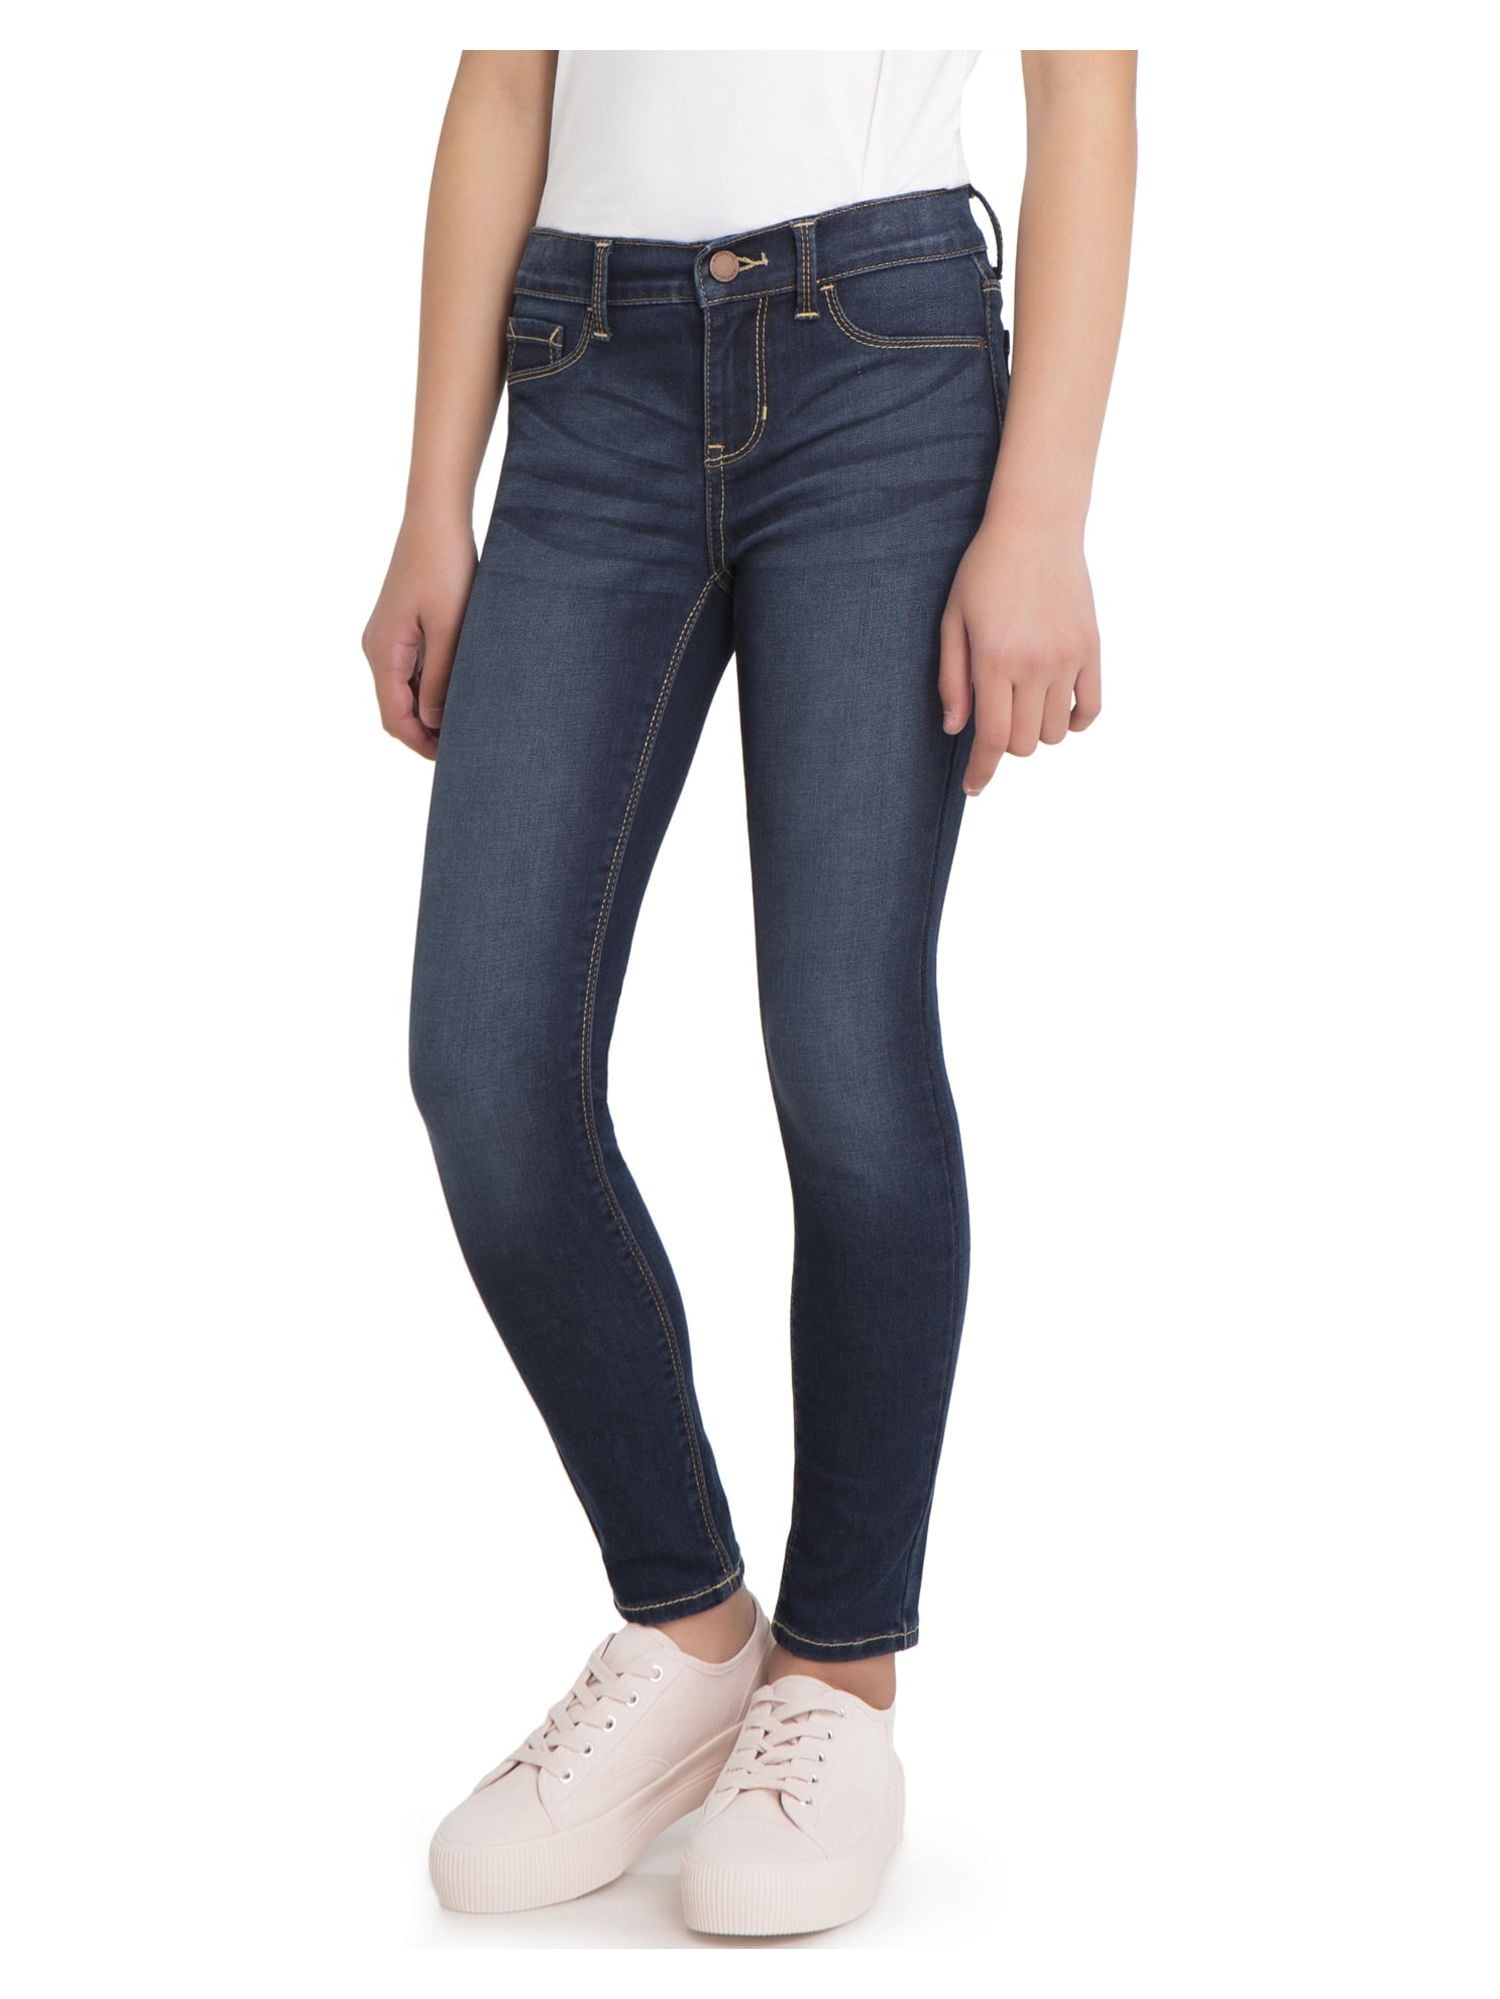 Jordache Girls Super Skinny Power Stretch Jeans, Sizes 5-18